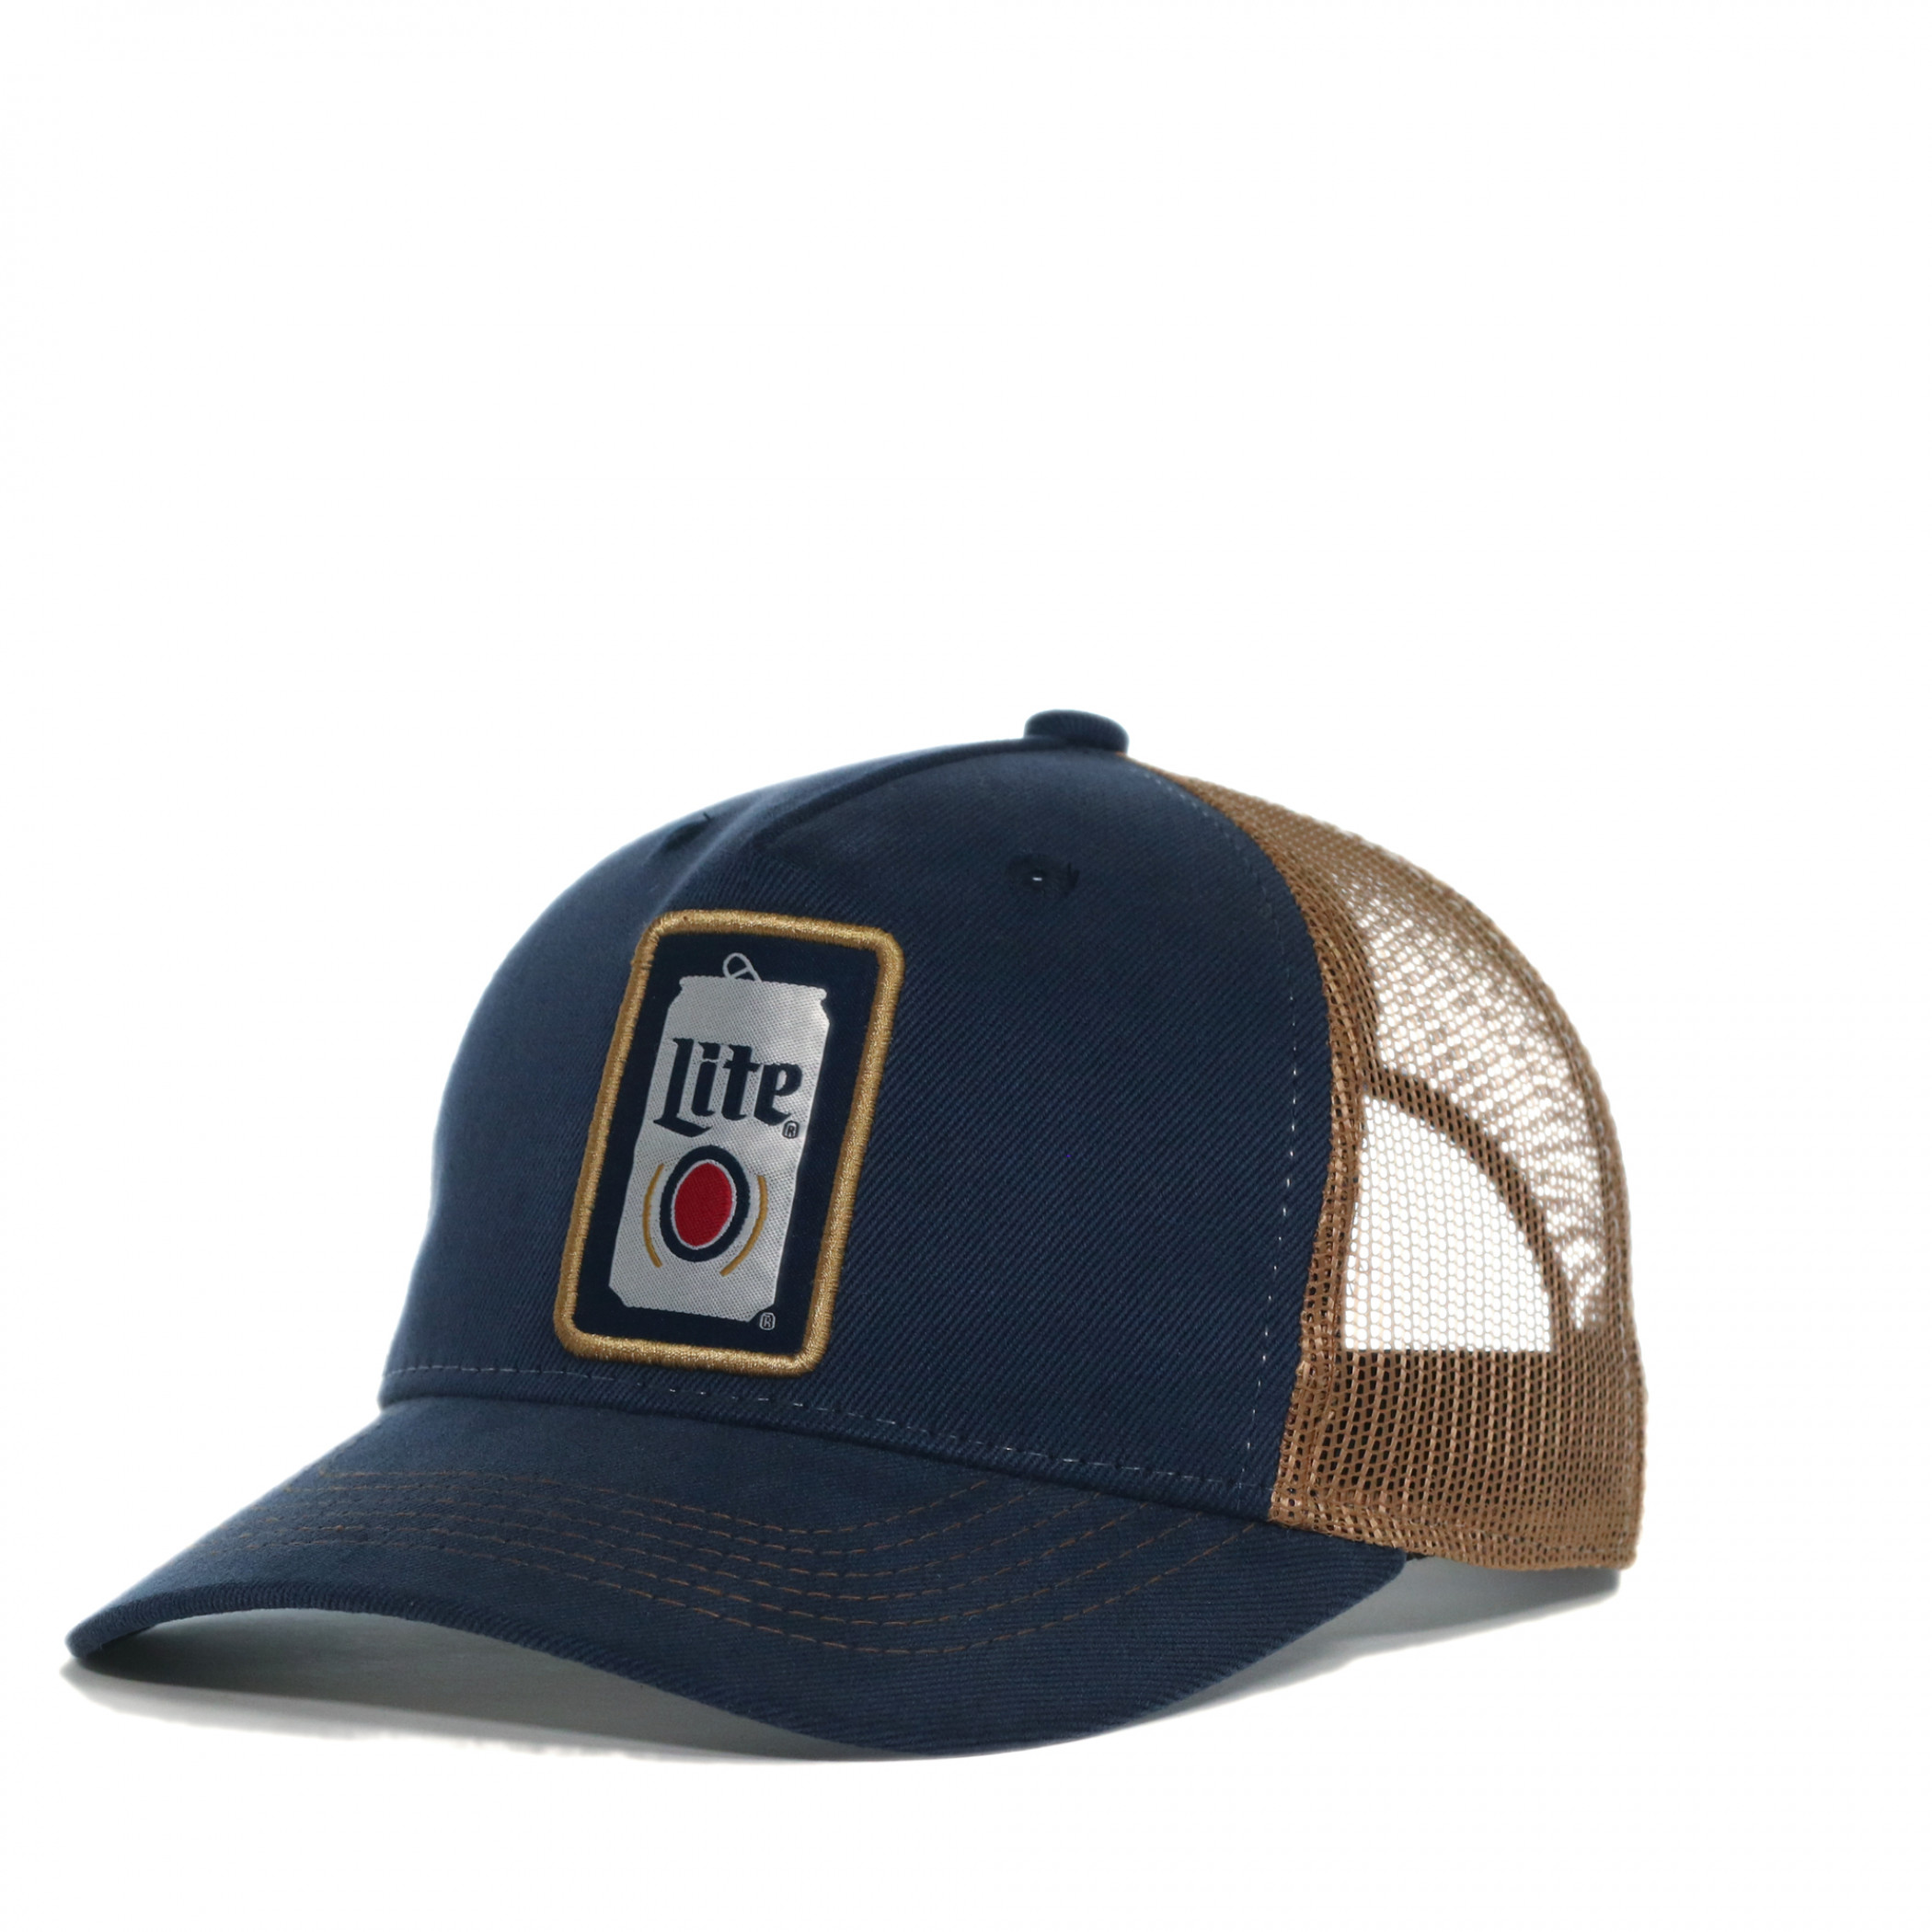 Miller Lite Beer Can Adjustable Trucker Hat